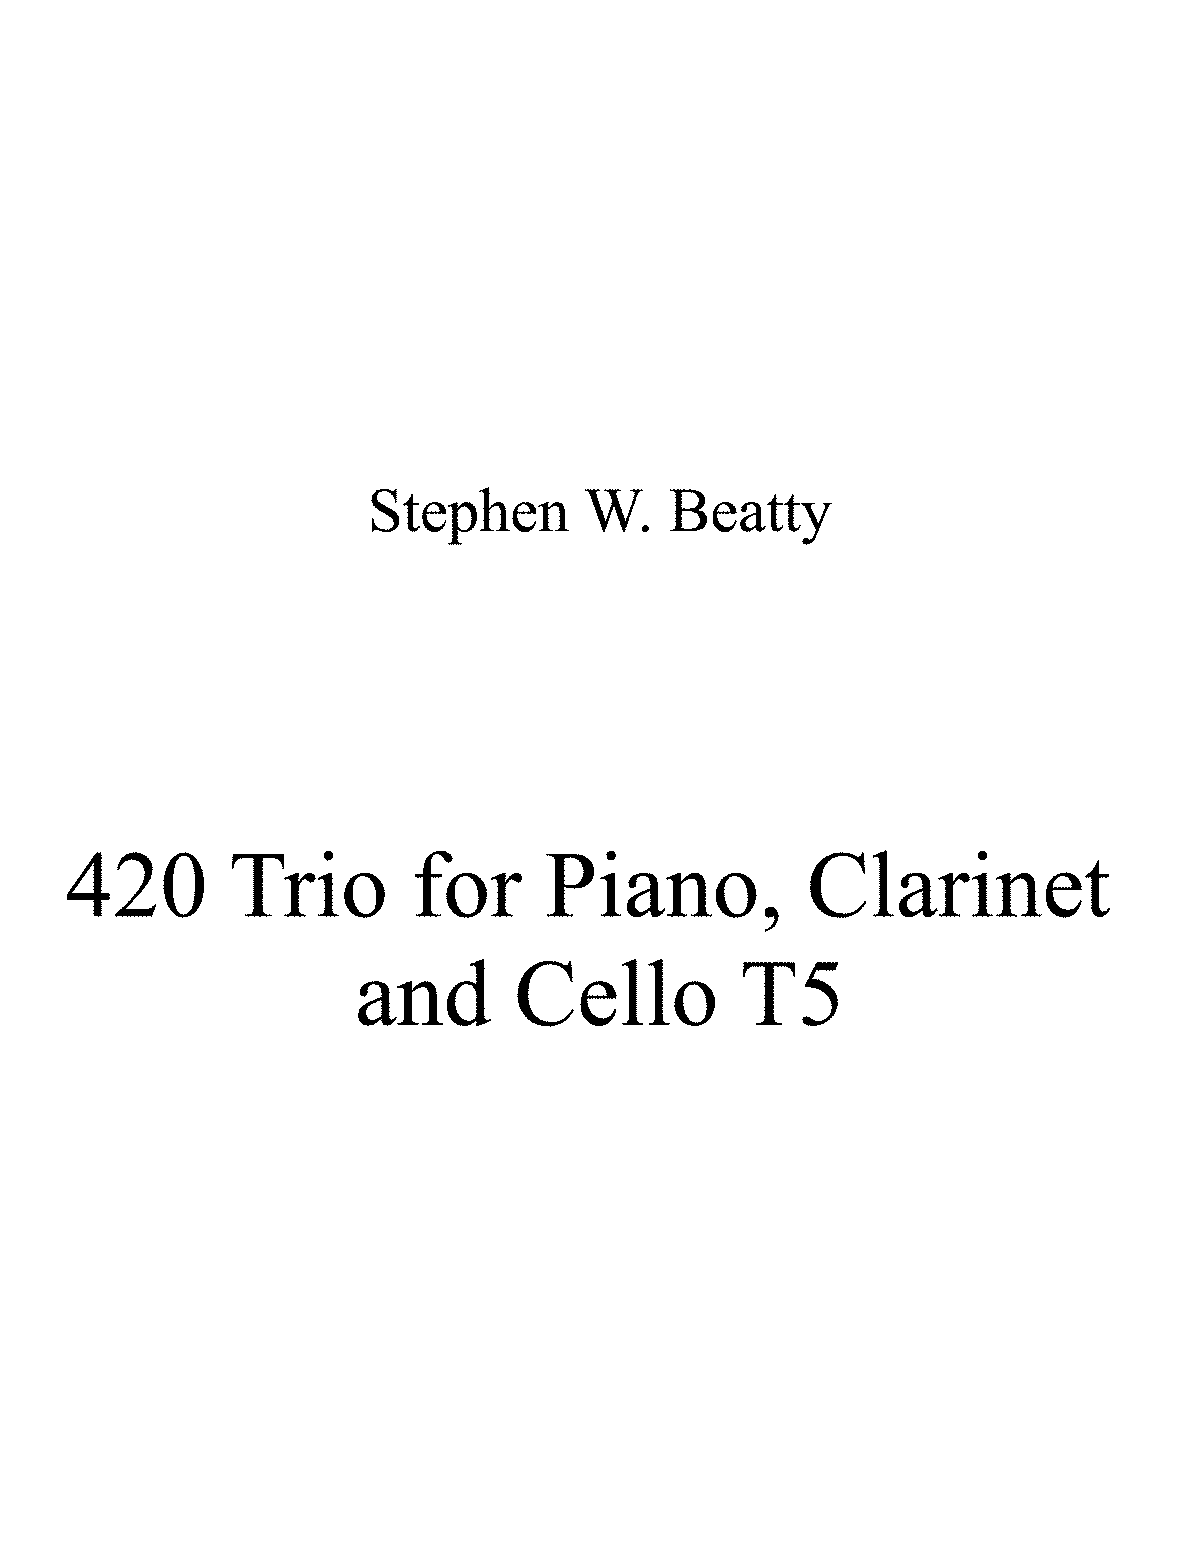 clarinet cello piano trio repertoire